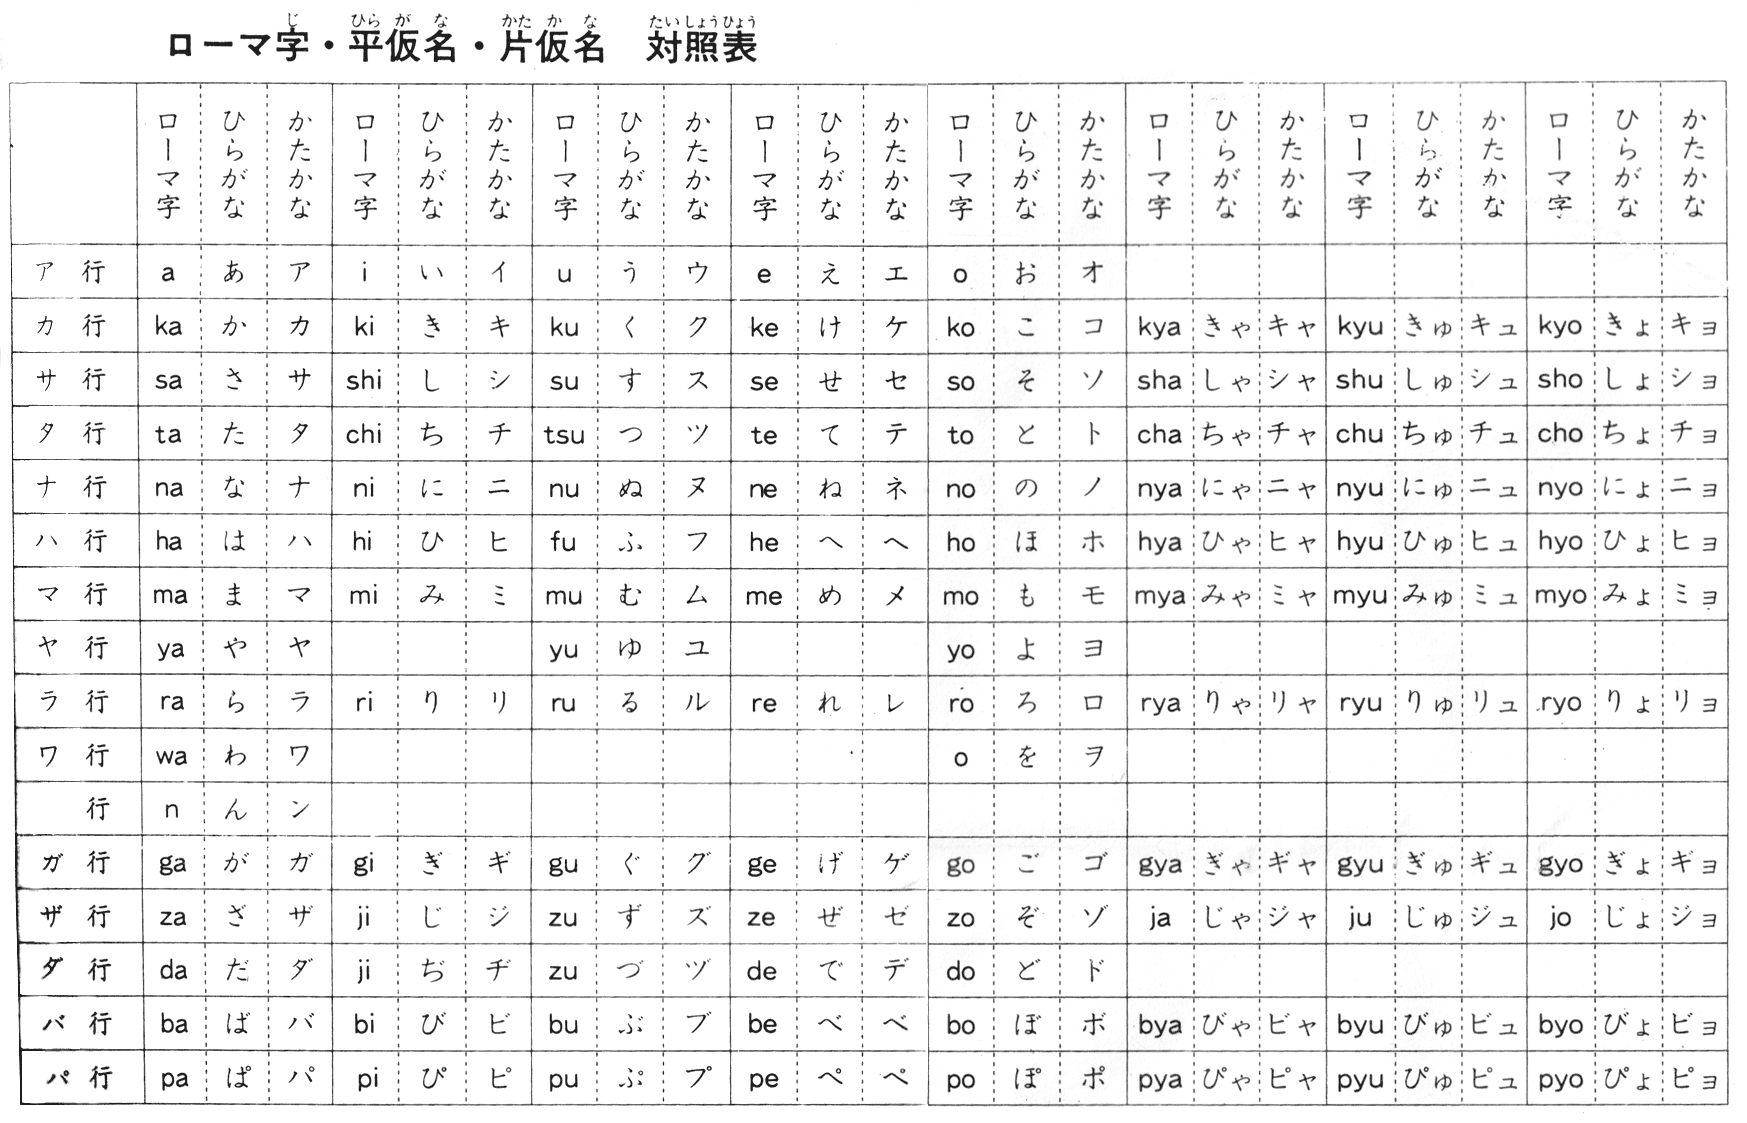 Hiragana and Katakana by similarity Japanese writting